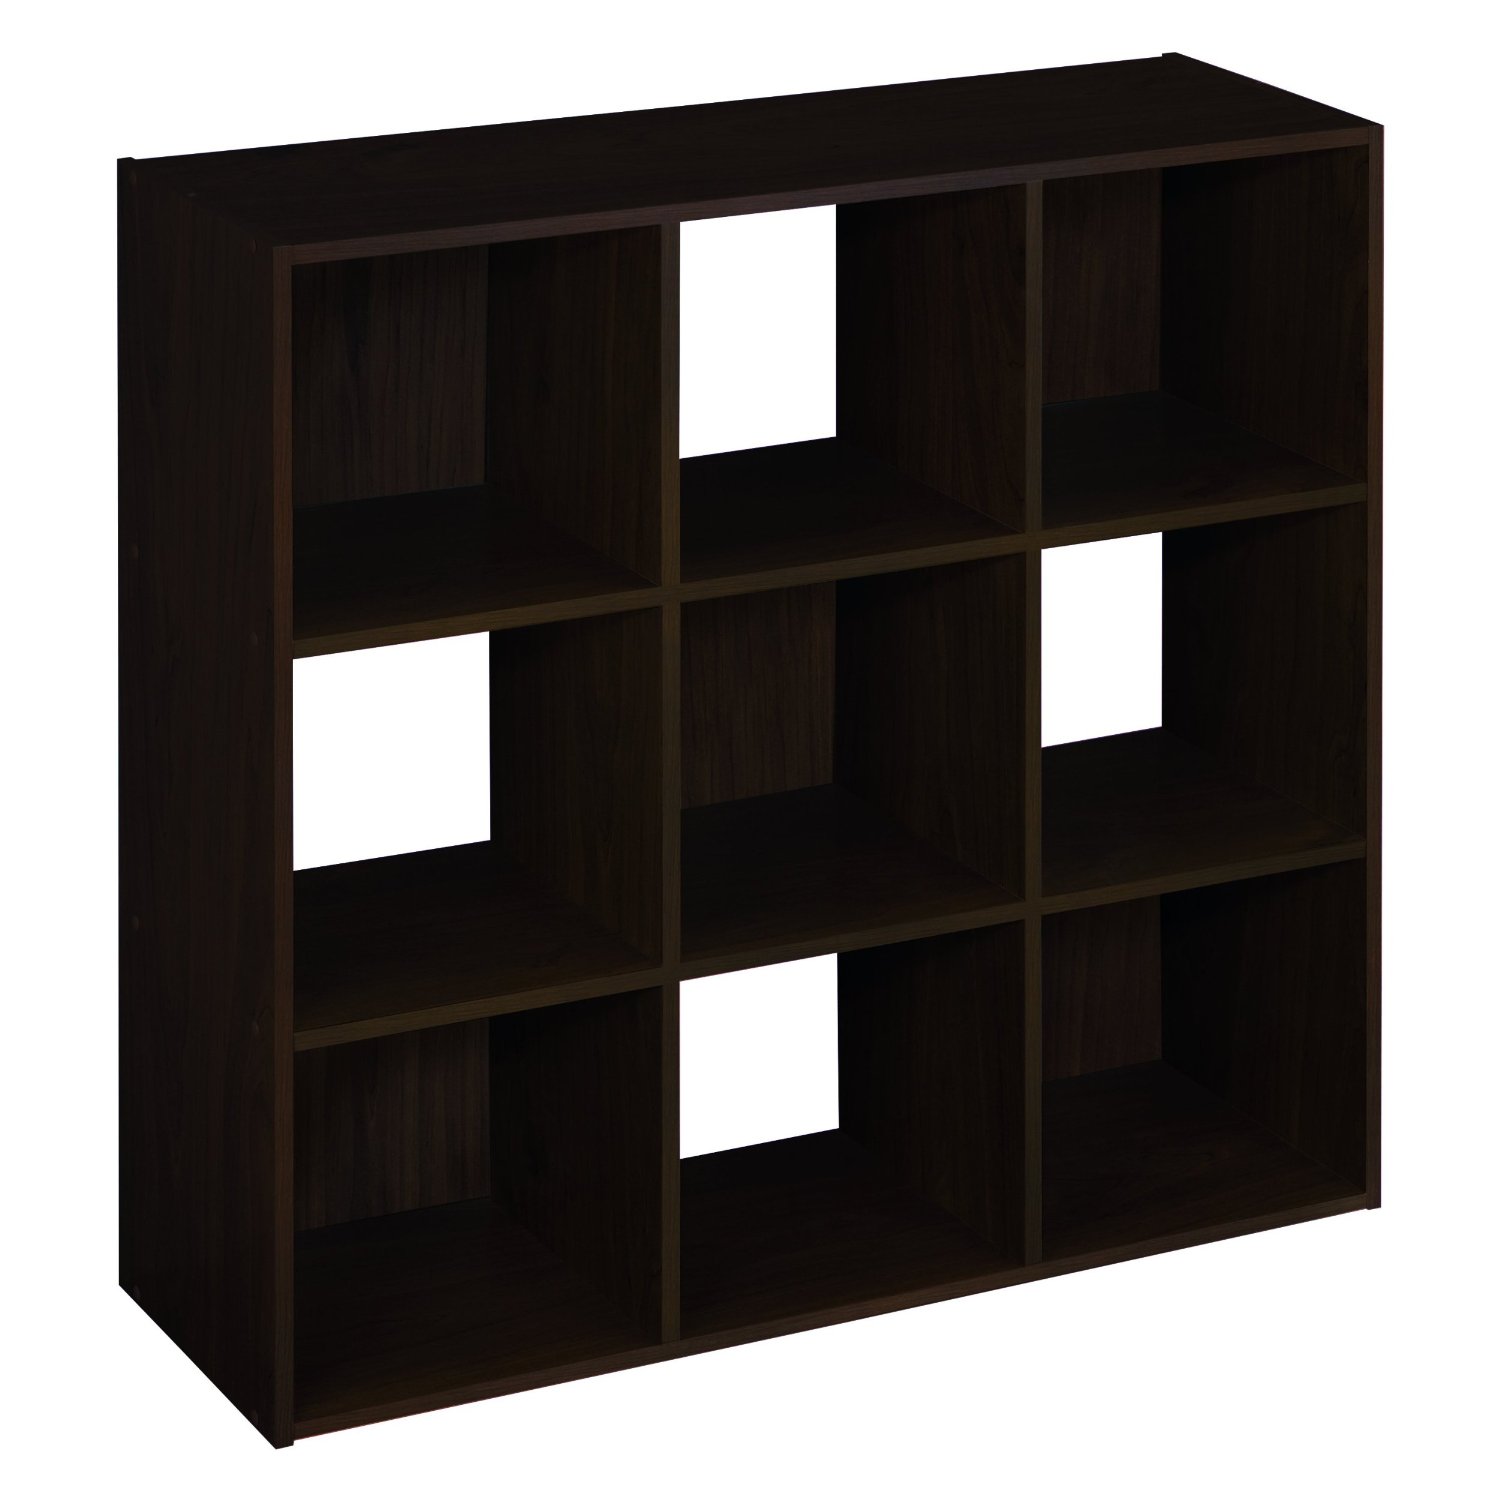 whosle Cubeicals 6,9,12-Cube Organizer Shelf diy organizer shelf for books